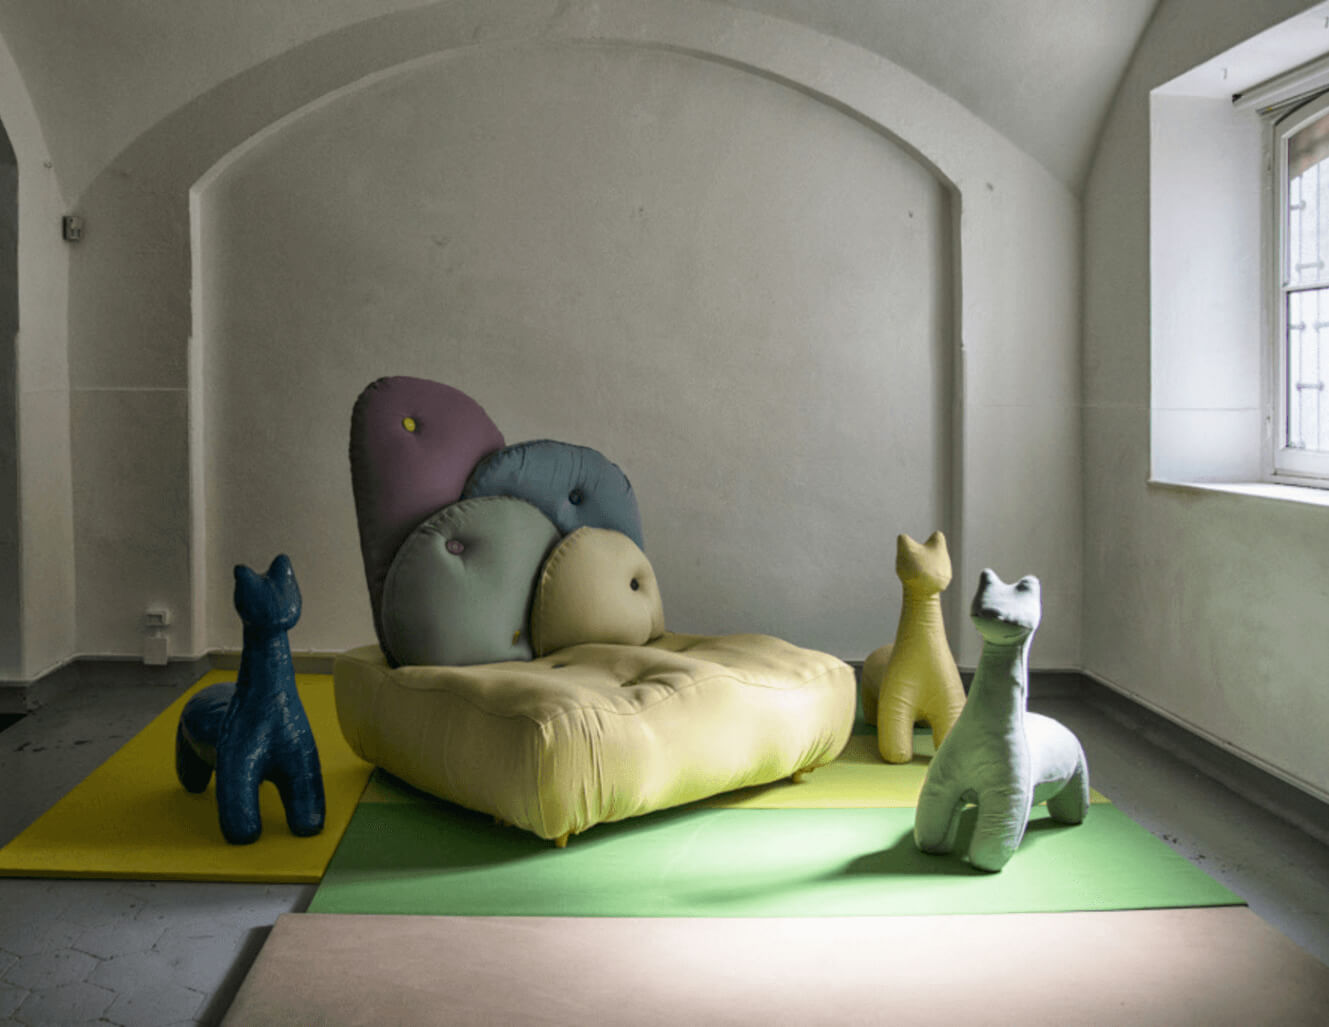 Pufy w kształcie zwierząt i sofa pokryte tkaninami Sunbrella w galerii Rossany Orlandi w Mediolanie we Włoszech